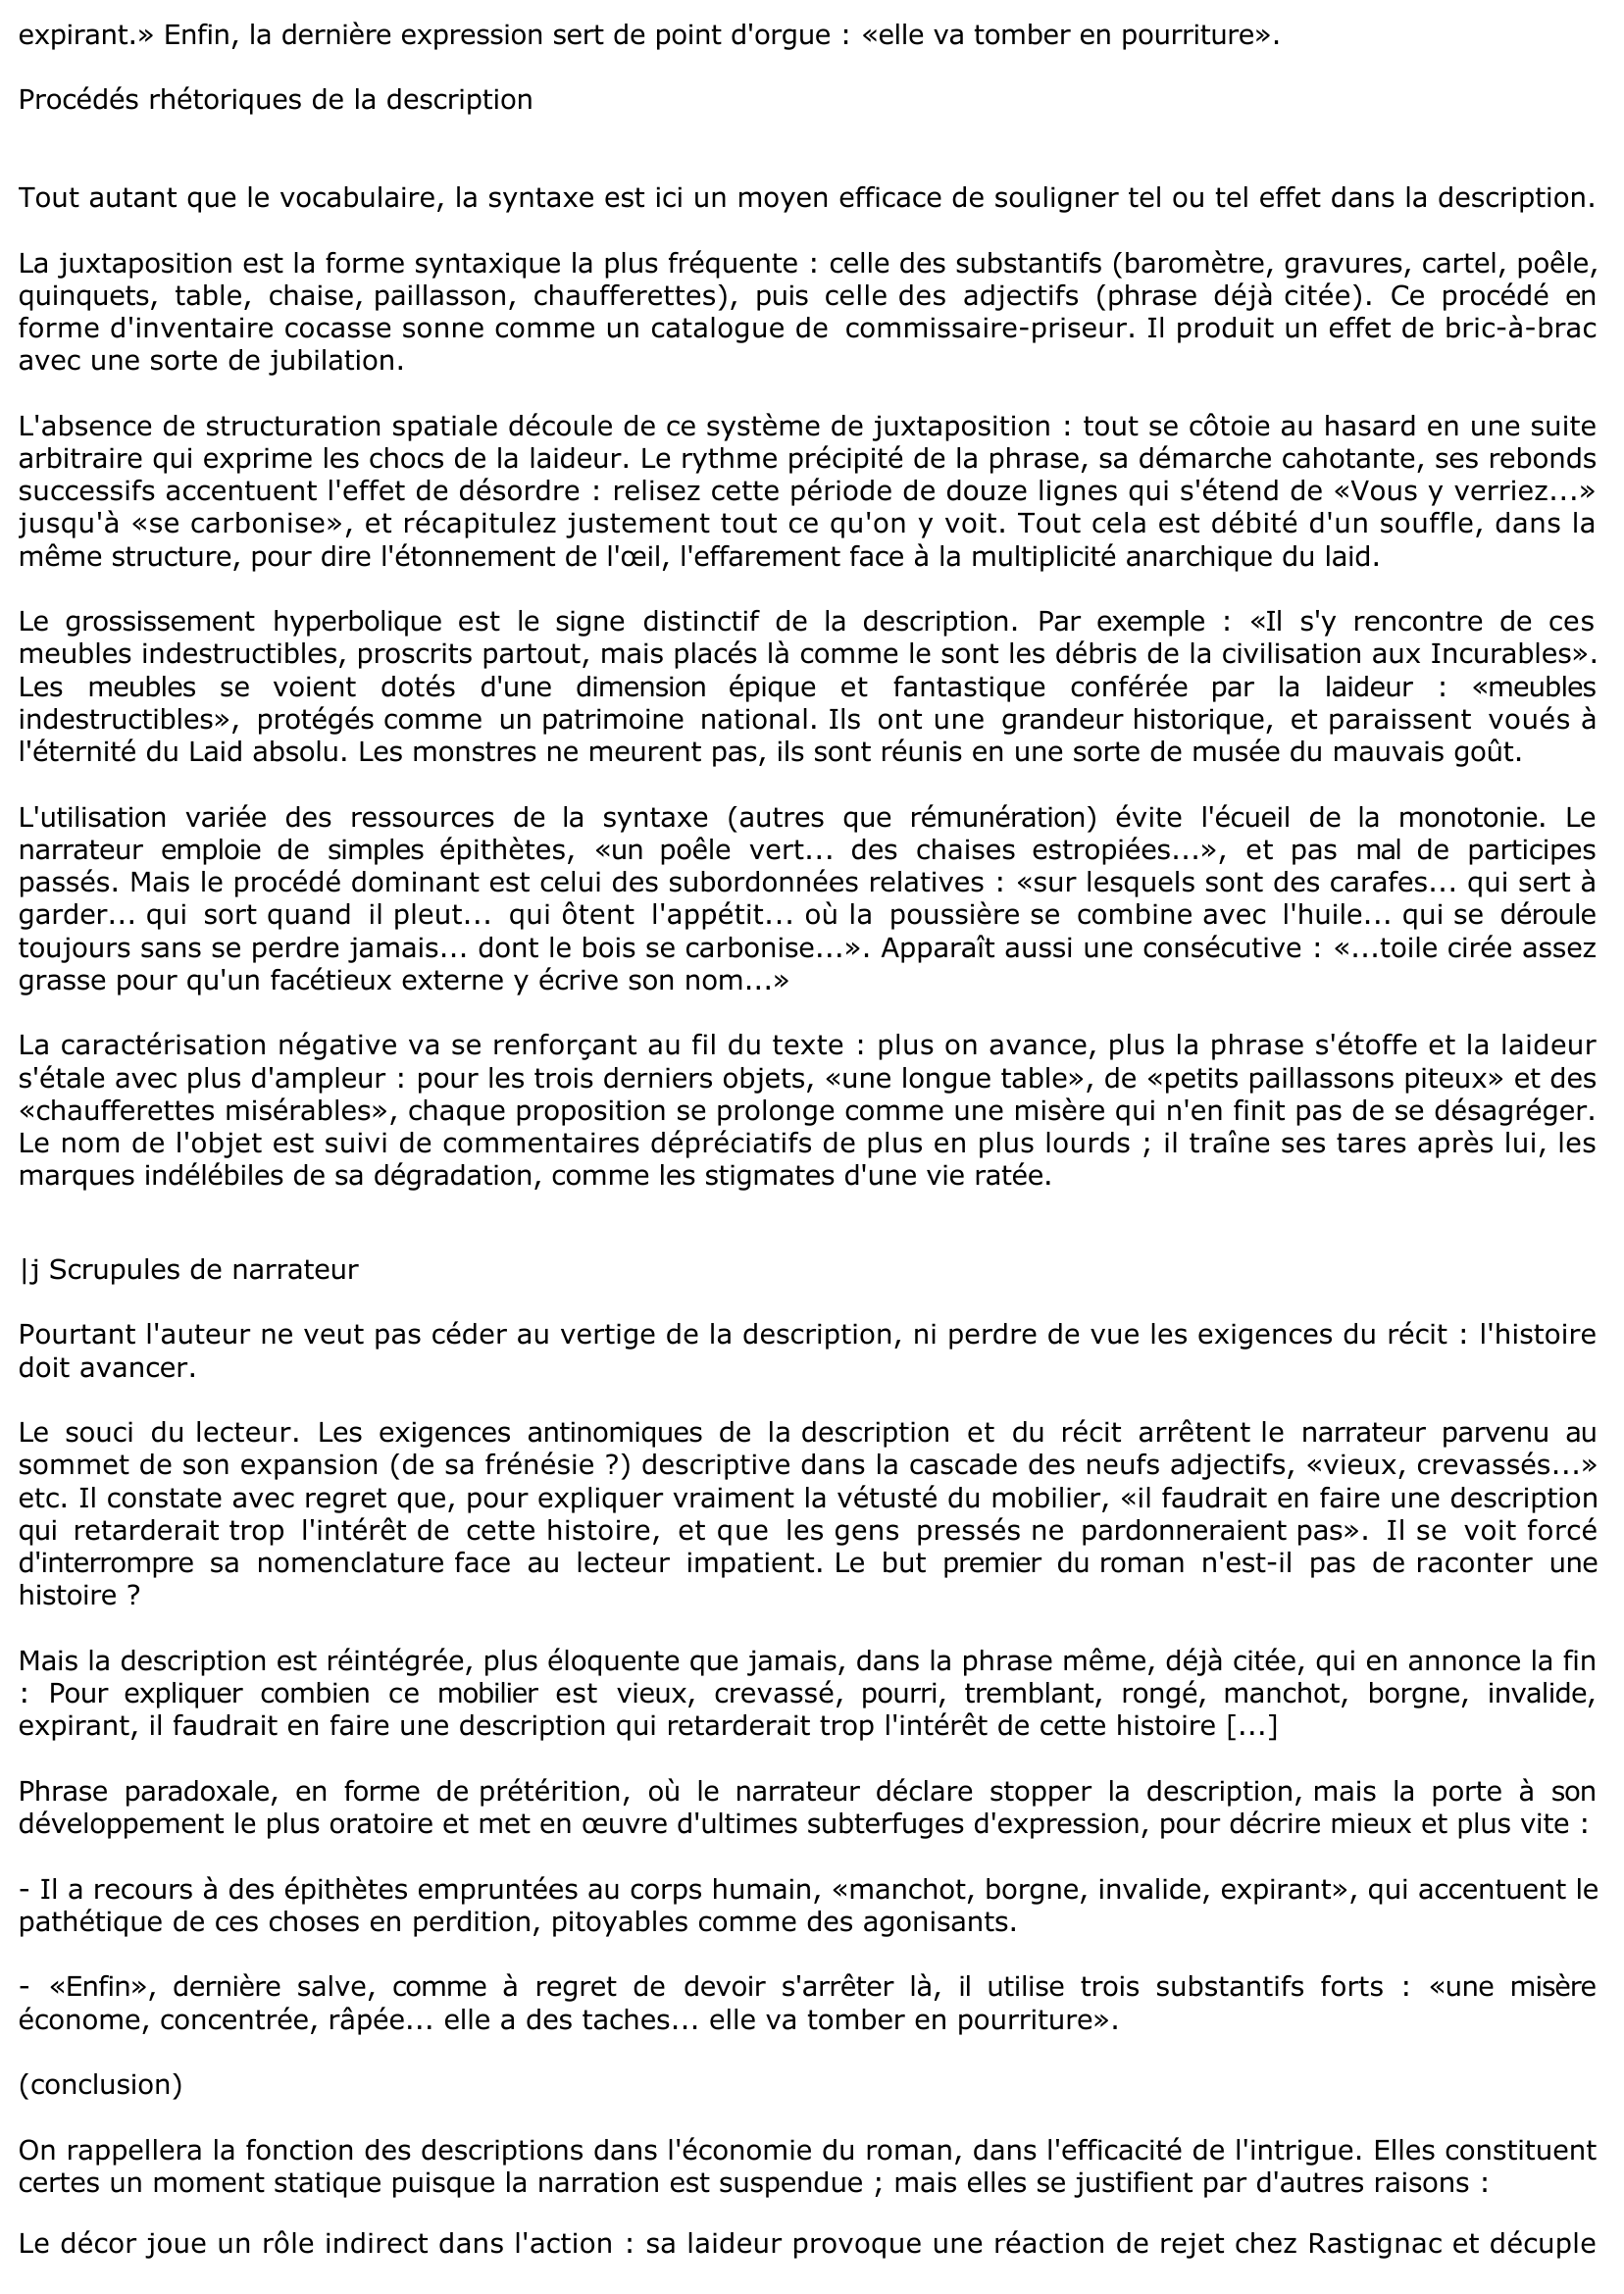 Prévisualisation du document La salle à manger de la pension Vauquer («Cette salle... tomber en pourriture», pp. 27-28) - Le père Goriot de Balzac